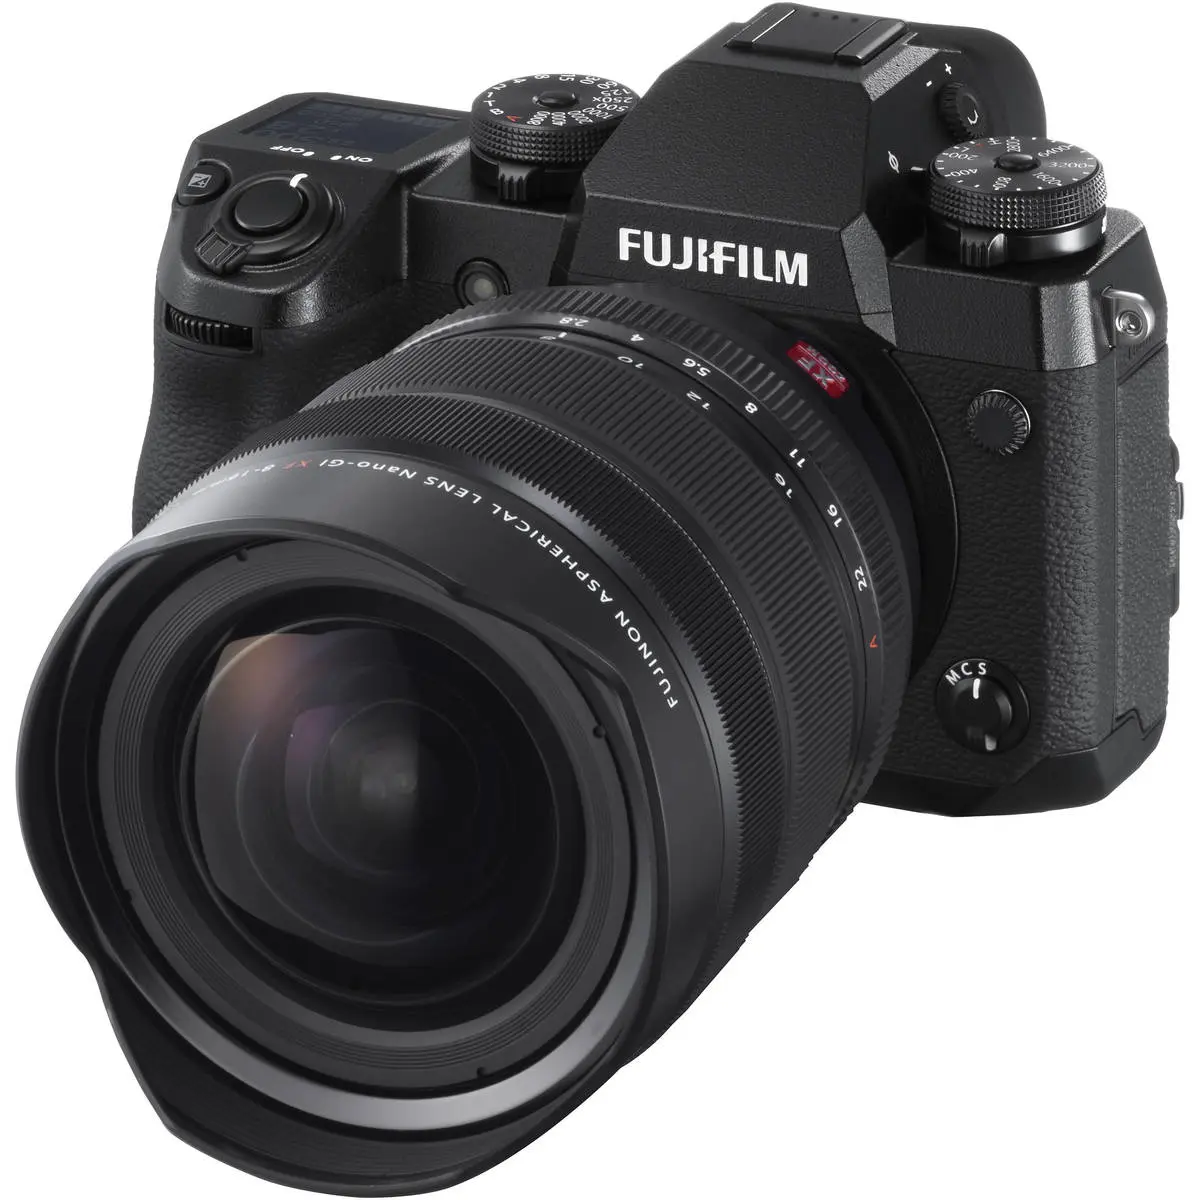 10. Fujifilm FUJINON XF 8-16mm F2.8 R LM WR Lens